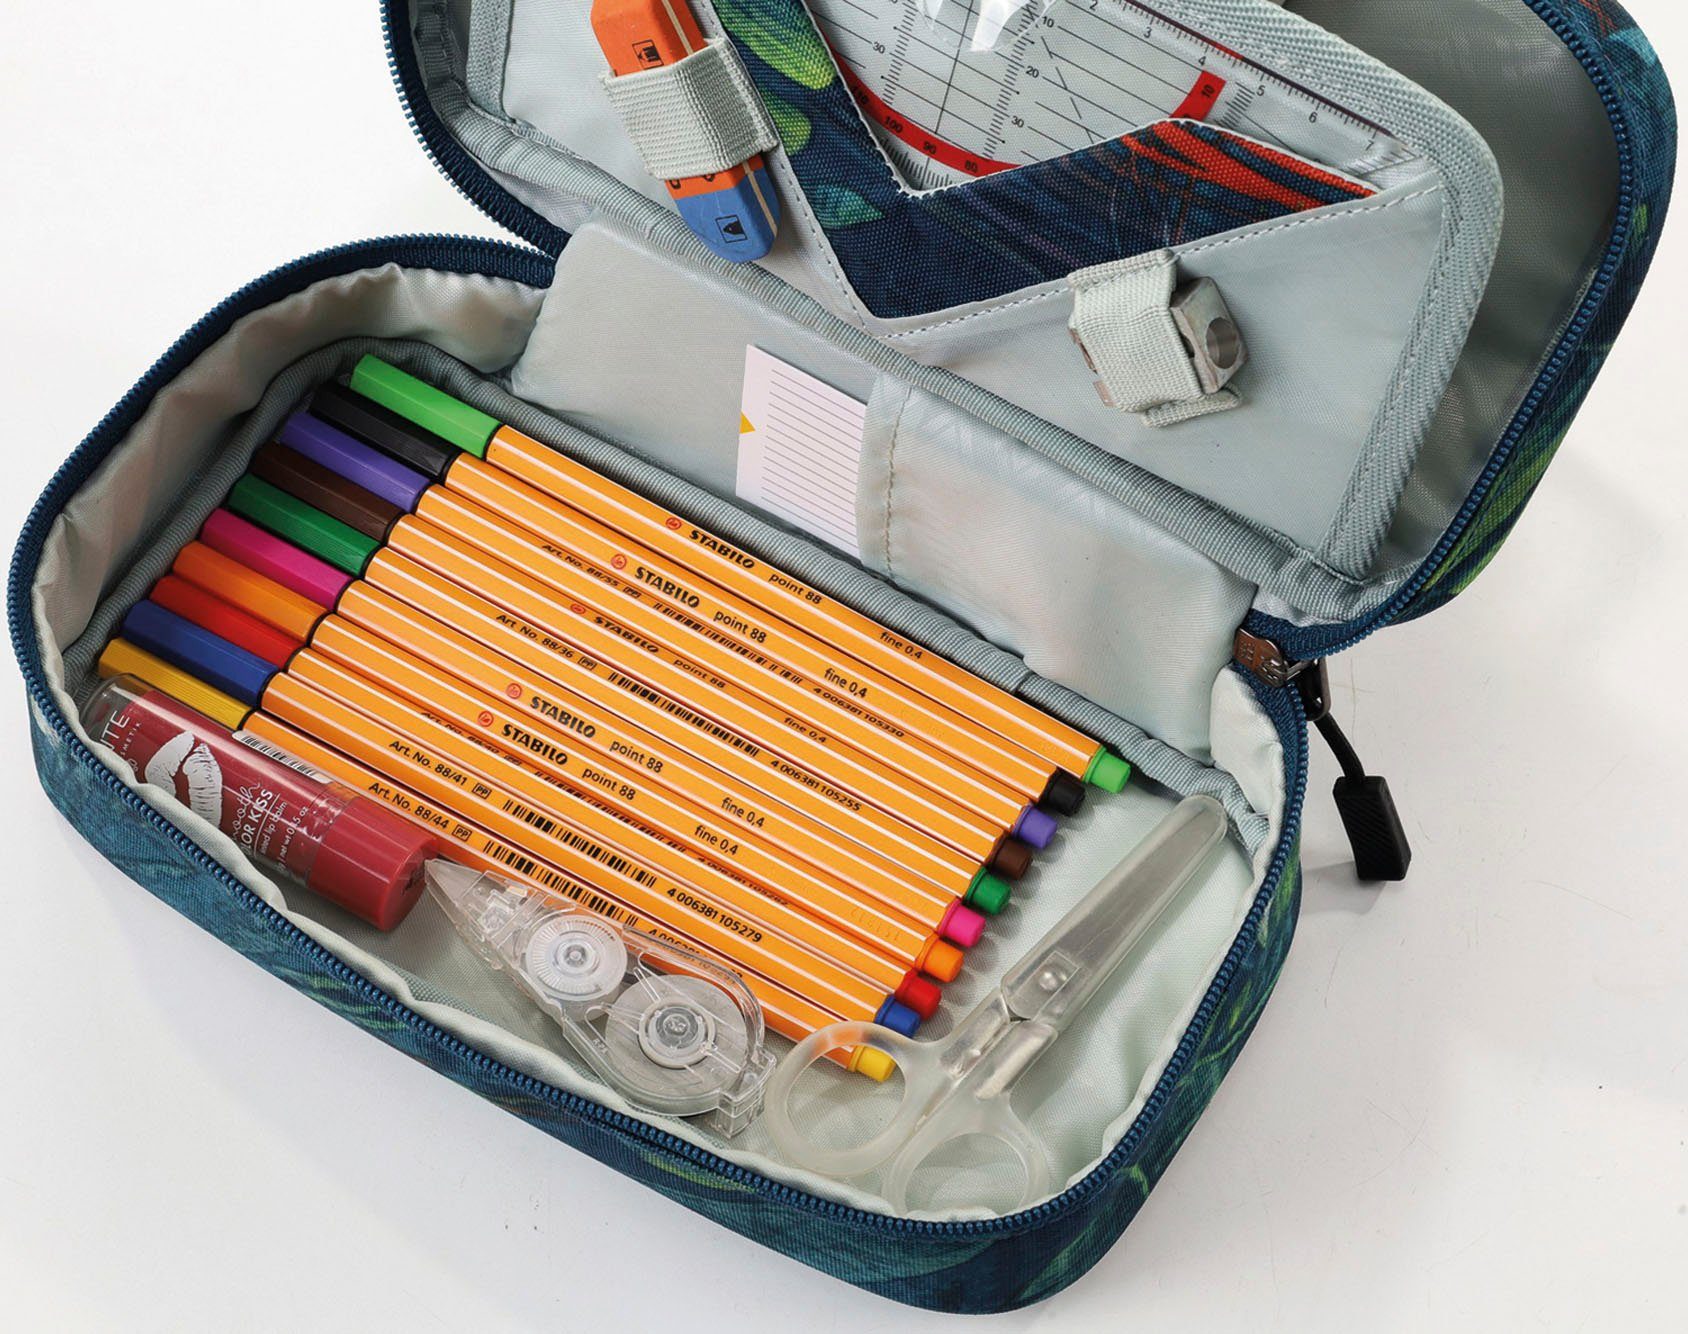 Federtasche Tropical Pencil Case NITRO XL,